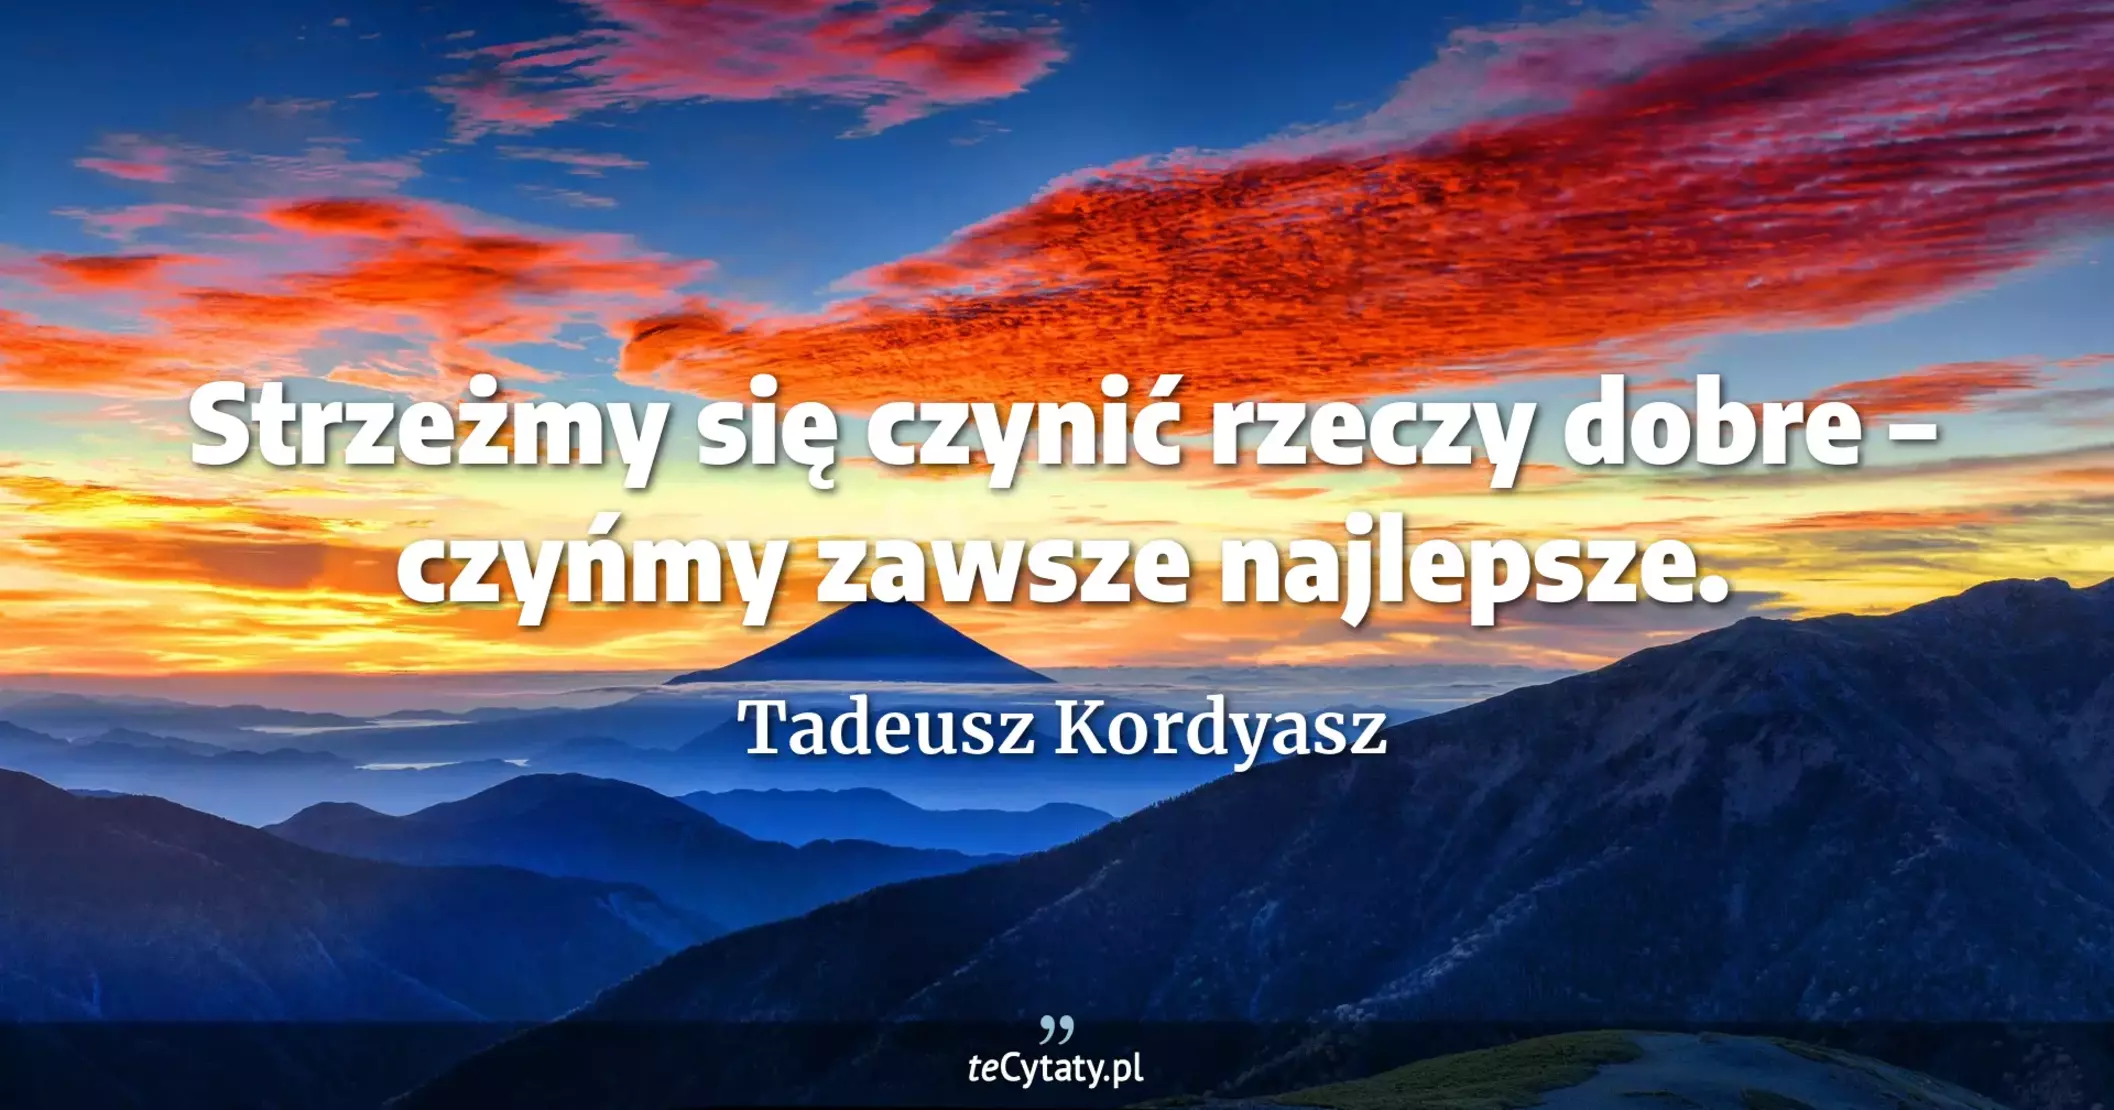 Strzeżmy się czynić rzeczy dobre – czyńmy zawsze najlepsze. - Tadeusz Kordyasz